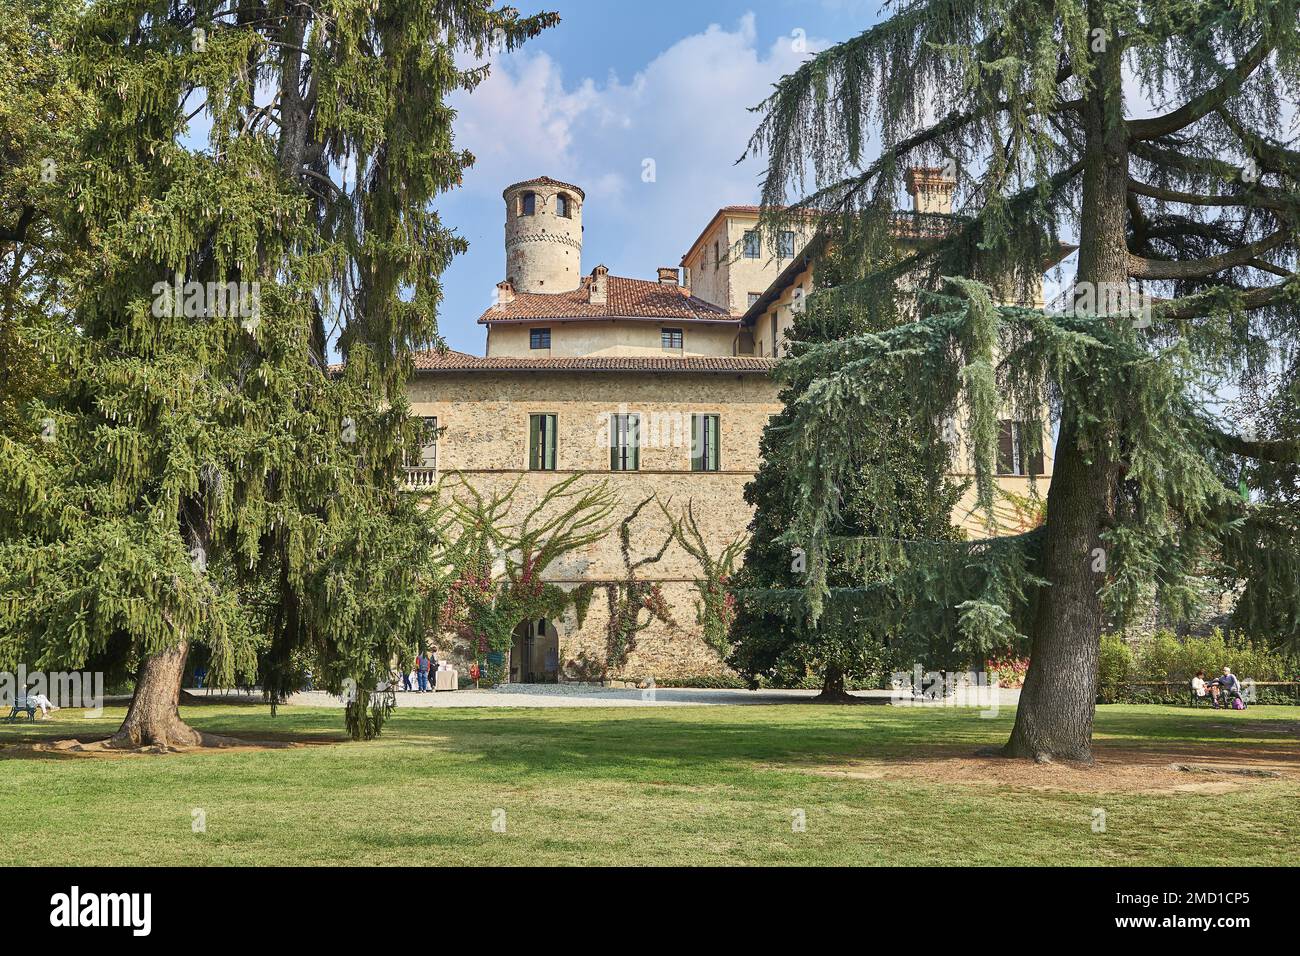 Manta, Itaky - 14 de octubre de 2018: El palacio del siglo XVI de Valerano Saluzzo Della Manta conocido como Castello Della Manta, visto desde la fachada Foto de stock